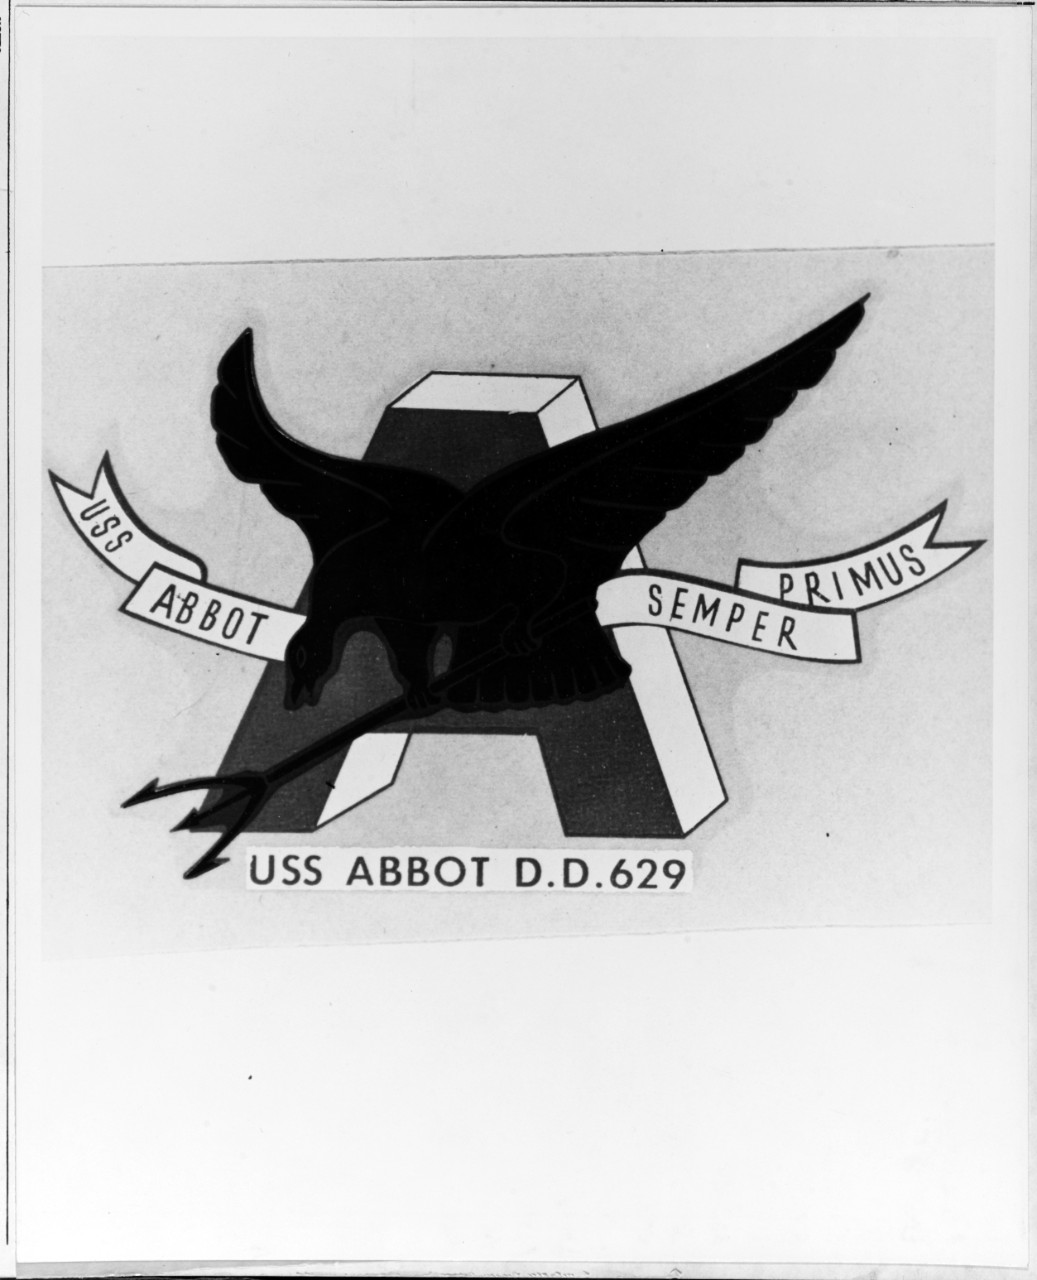 Insignia: USS ABBOT (DD-629)